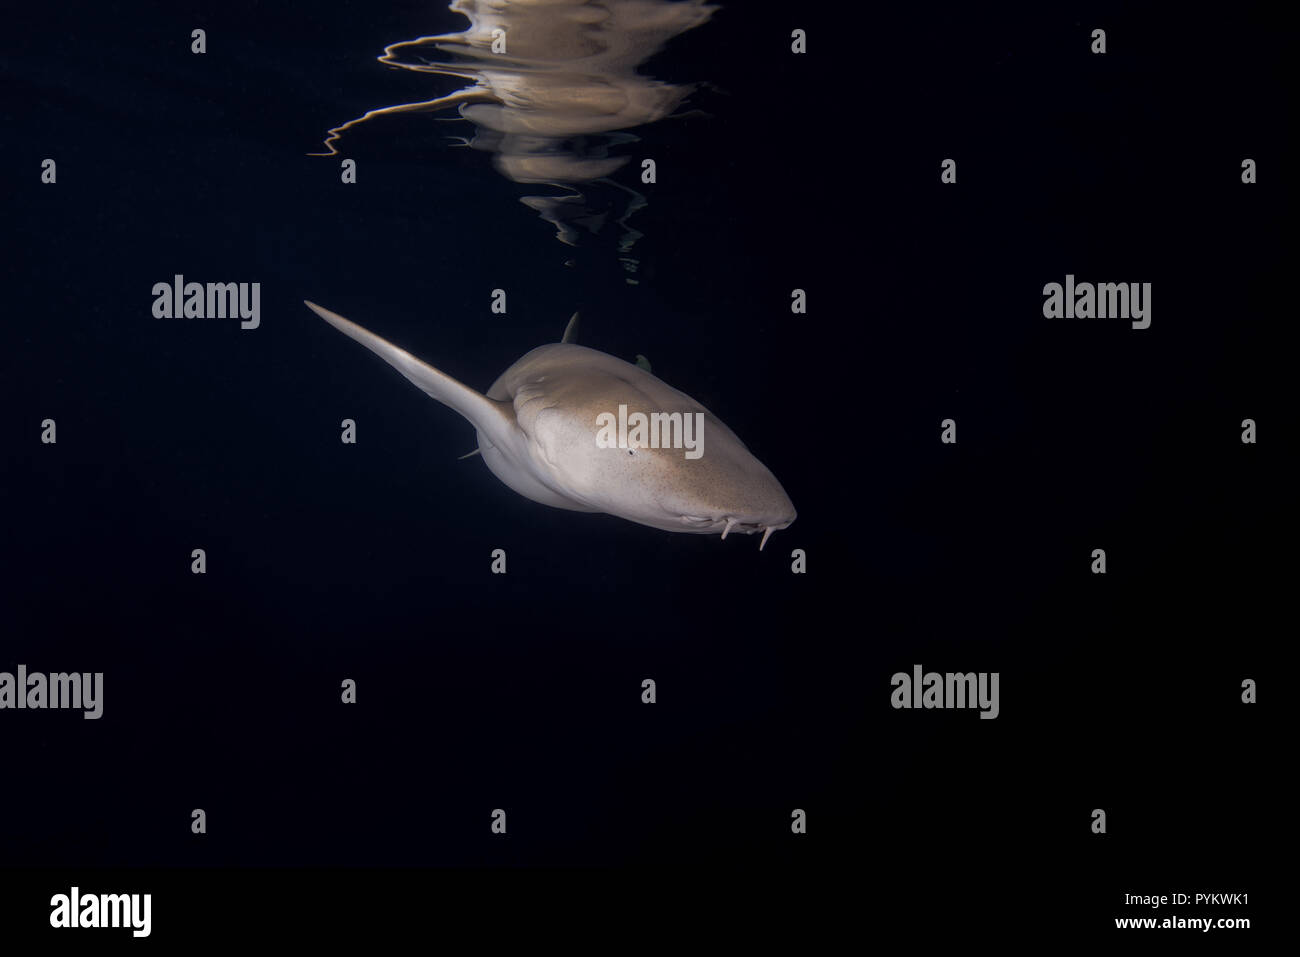 Requins nourrice fauve, Nebrius ferrugineus nager dans la nuit réfléchie par la surface de l'eau Banque D'Images